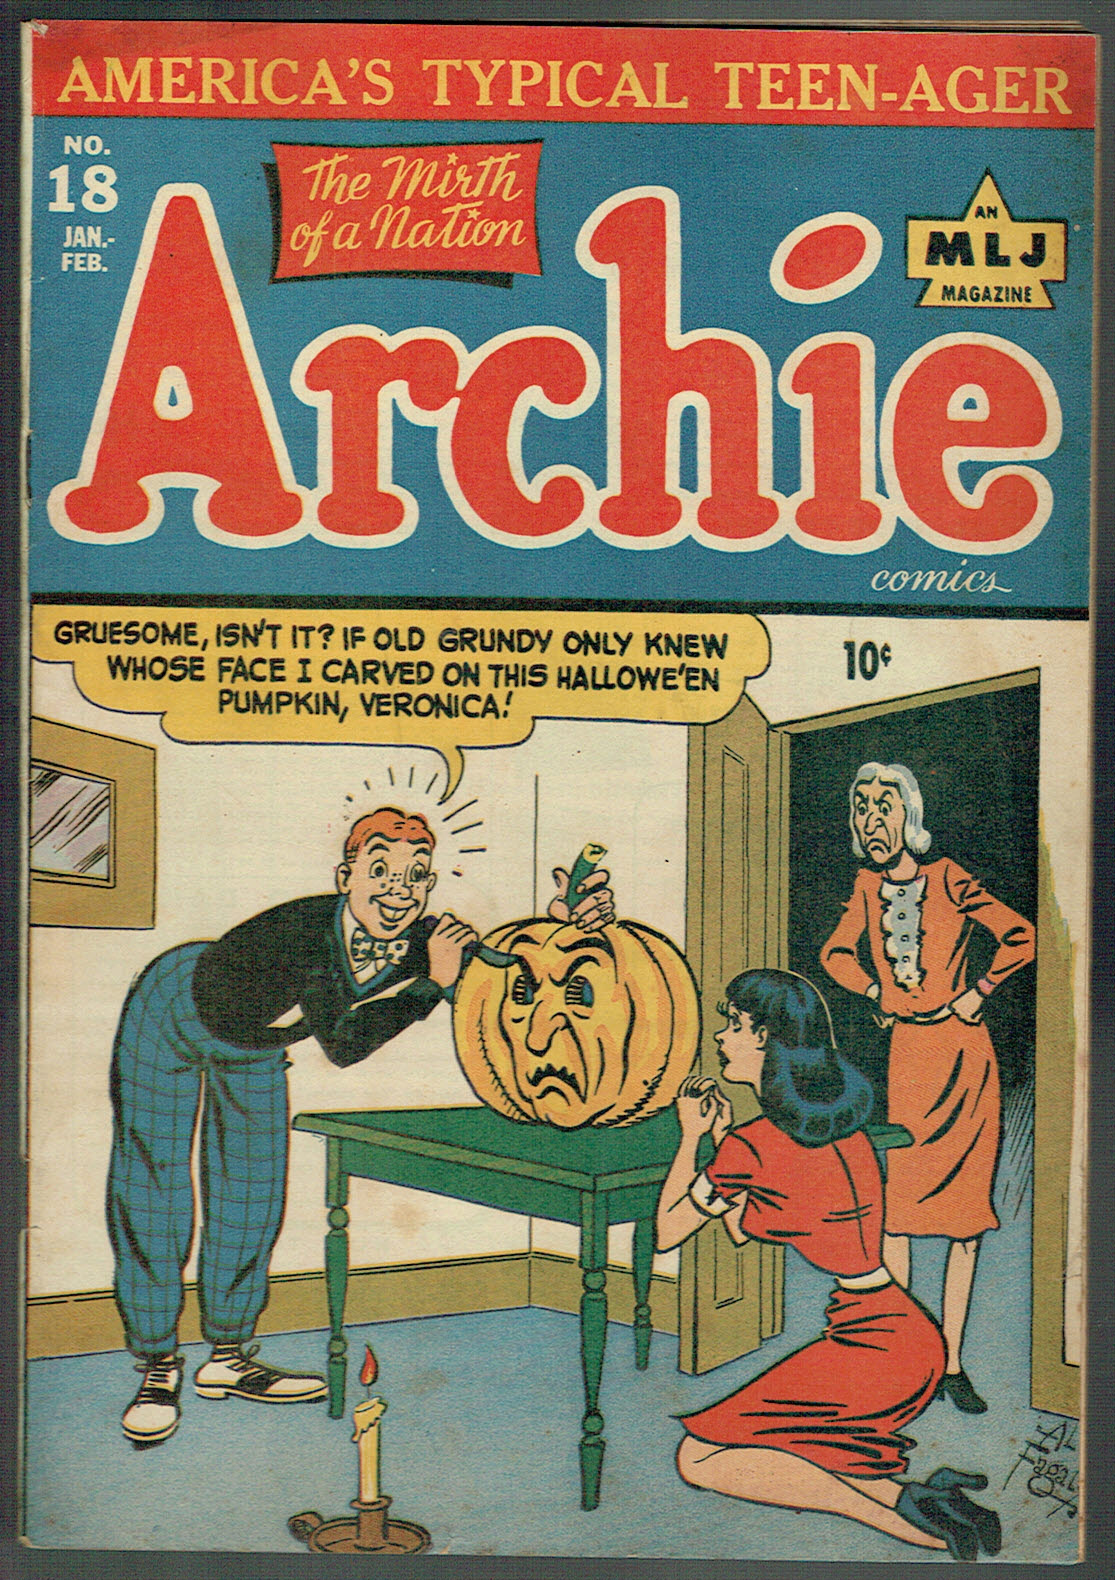 Archie Comics  #18